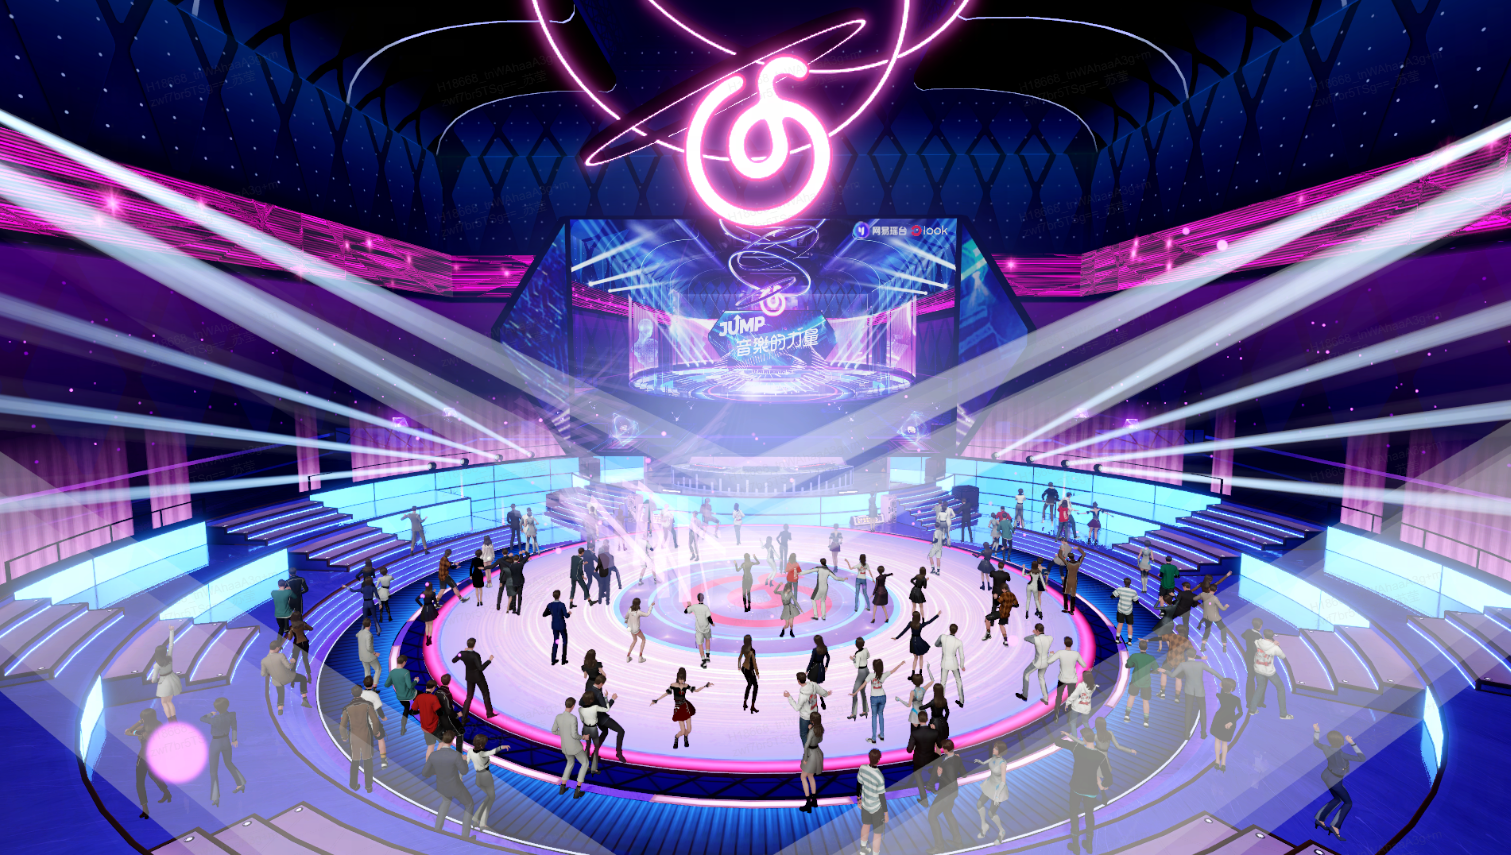 这是一张展示现代电子竞技场景的插画，中心是一个圆形舞台，观众围绕四周，场馆内灯光炫丽，气氛活跃。